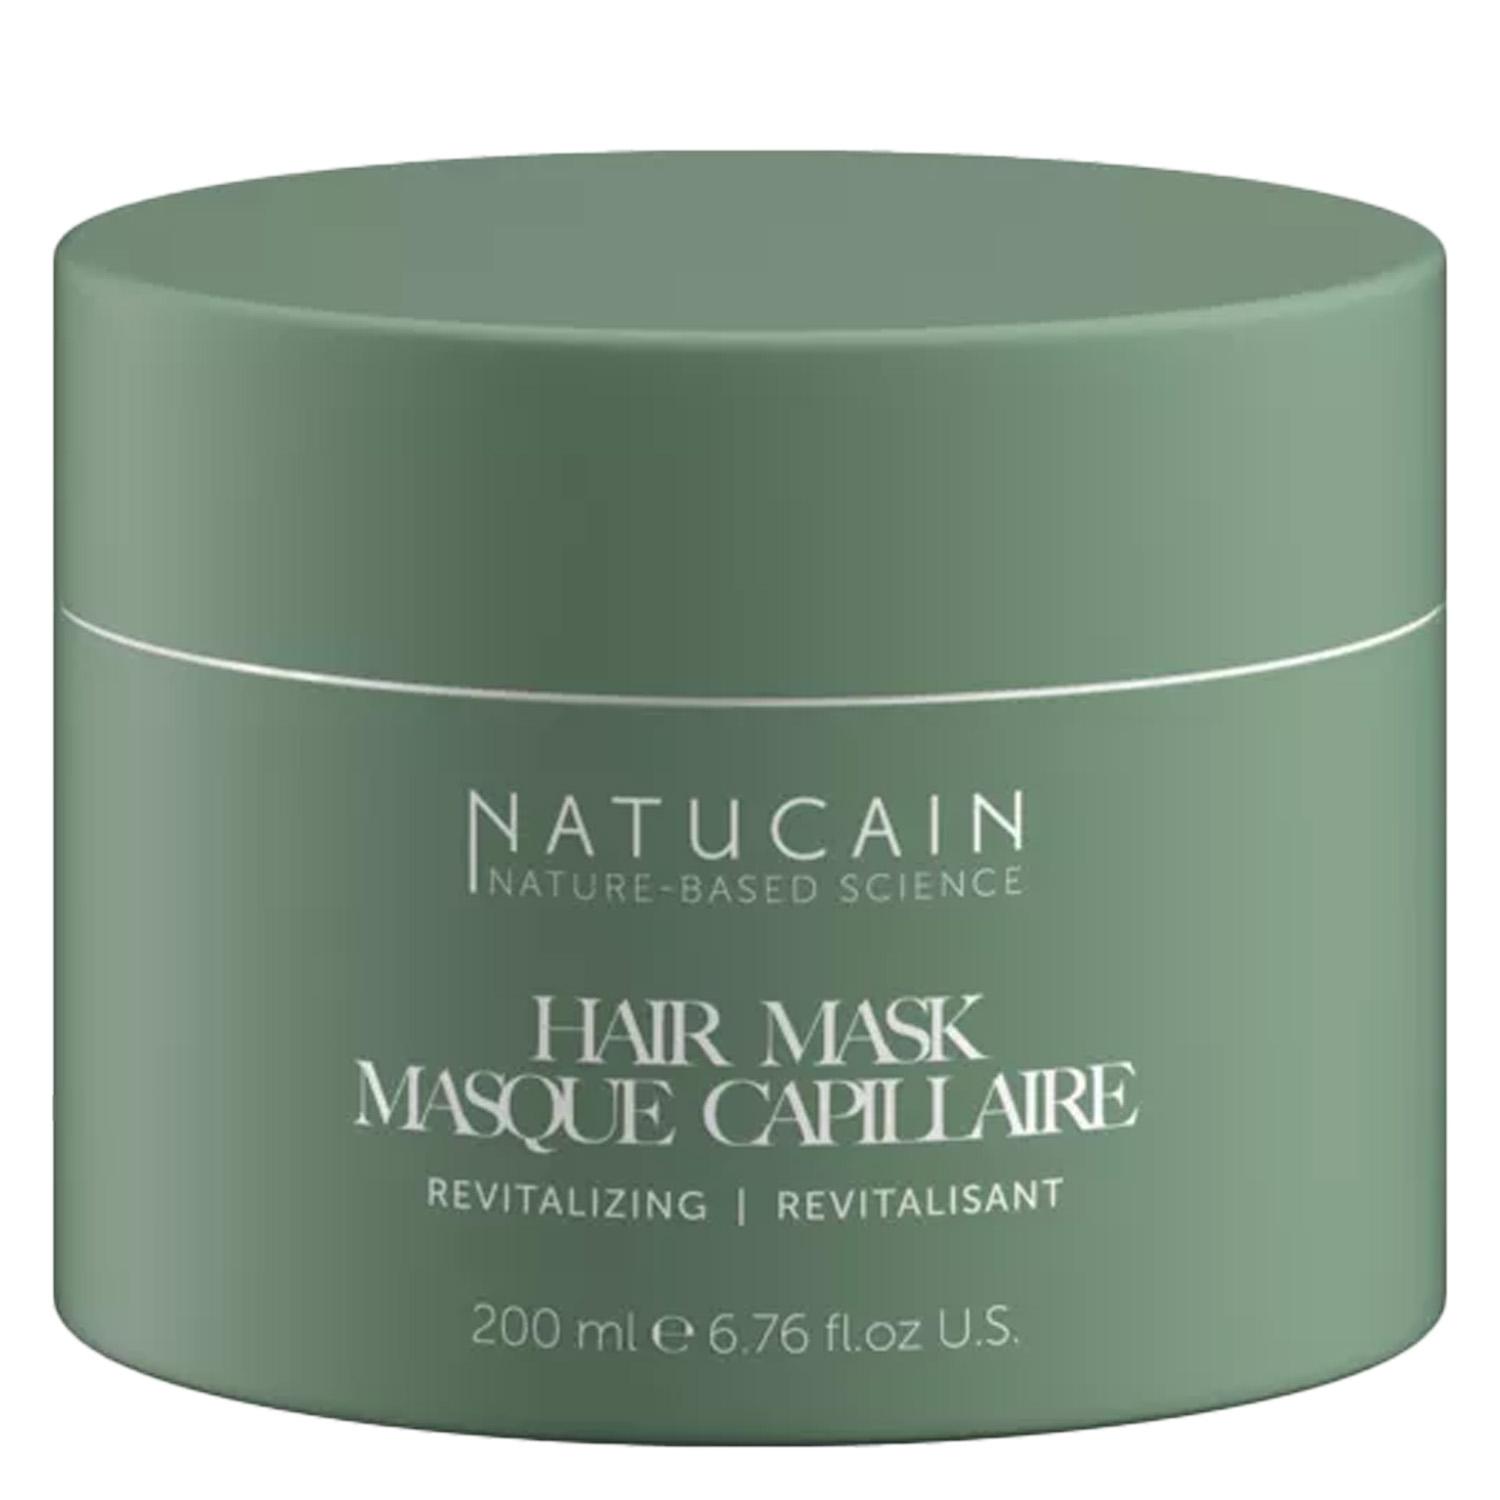 NATUCAIN - Revitalizing Hair Mask